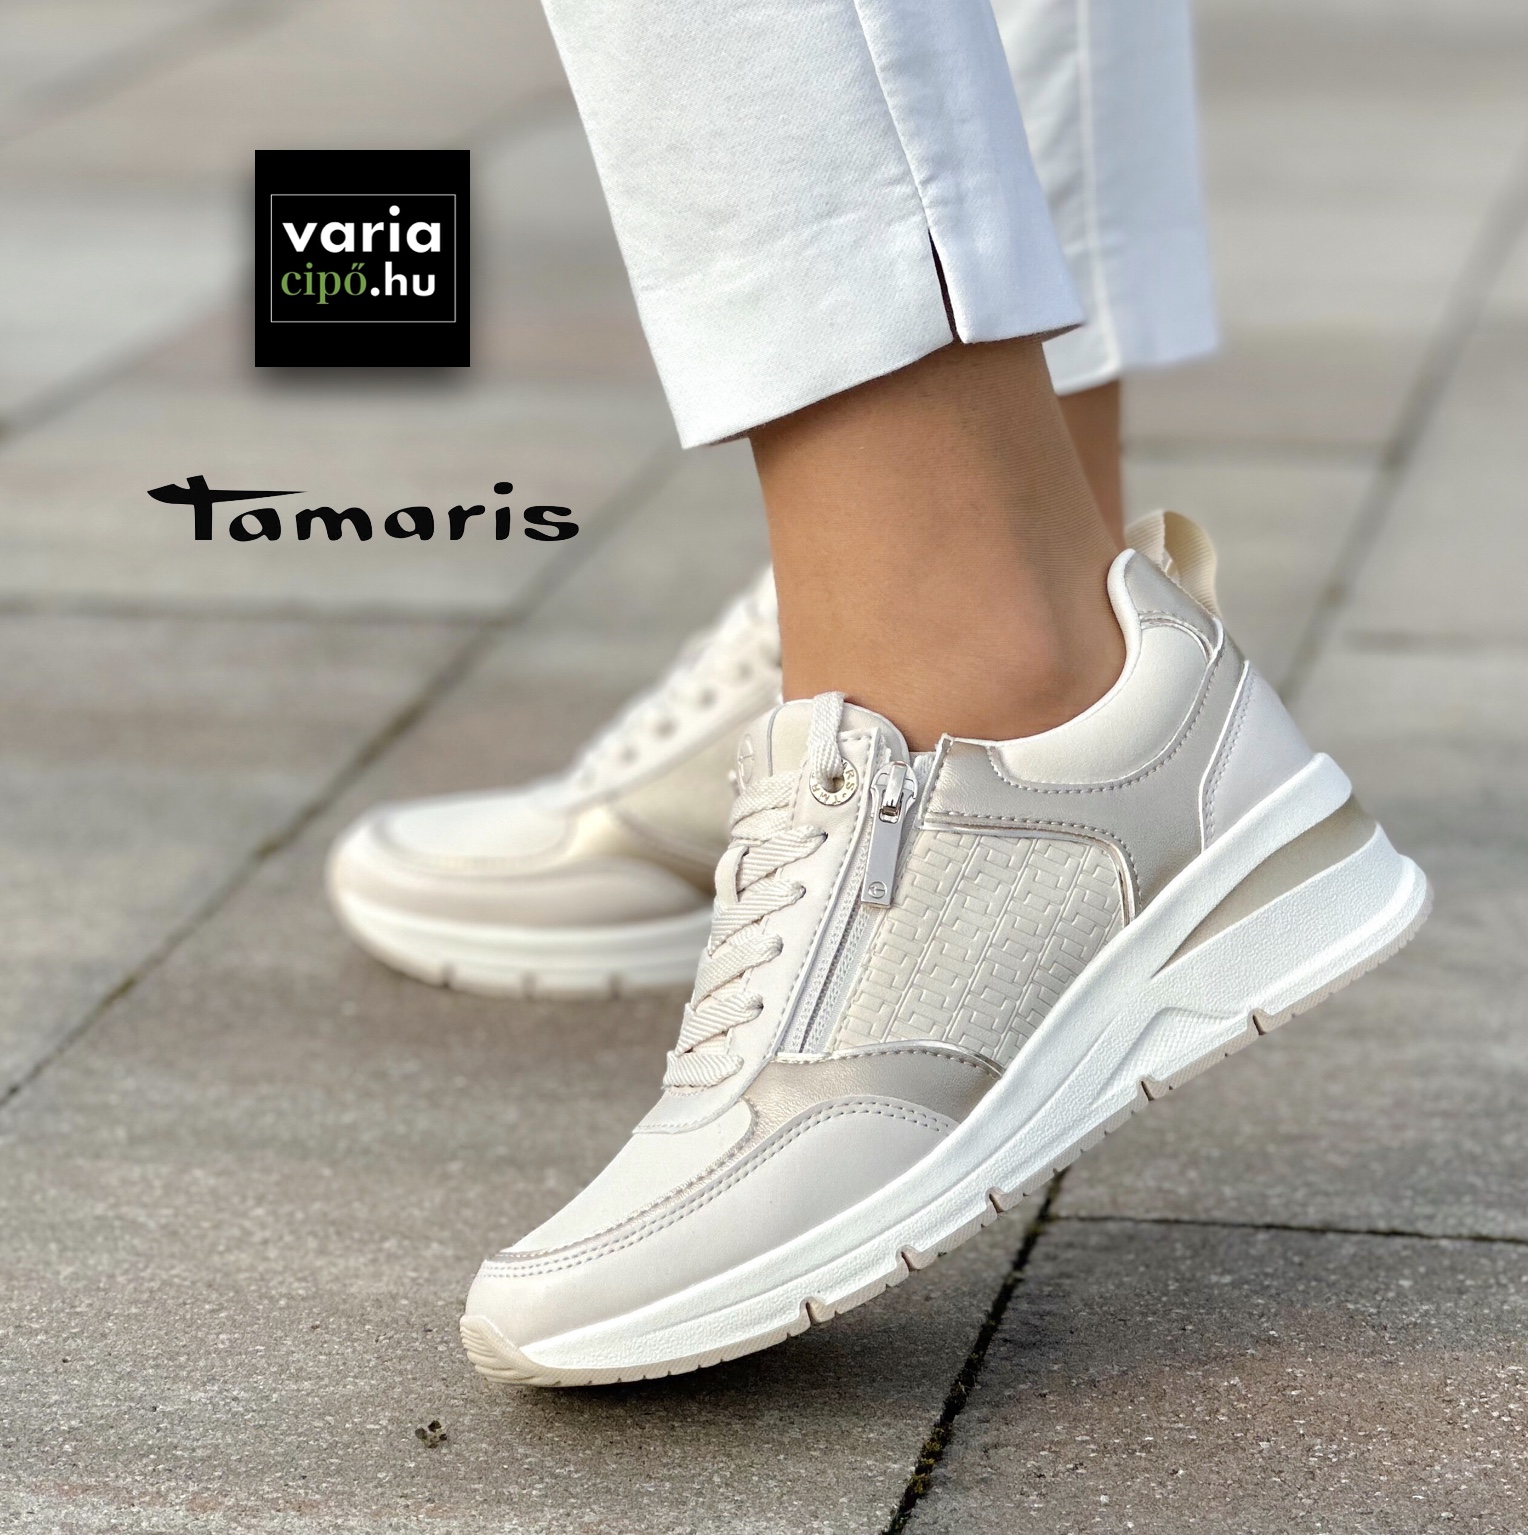 Tamaris emelt sarkú sportcipő, 1-23721-42 430 ivory comb.